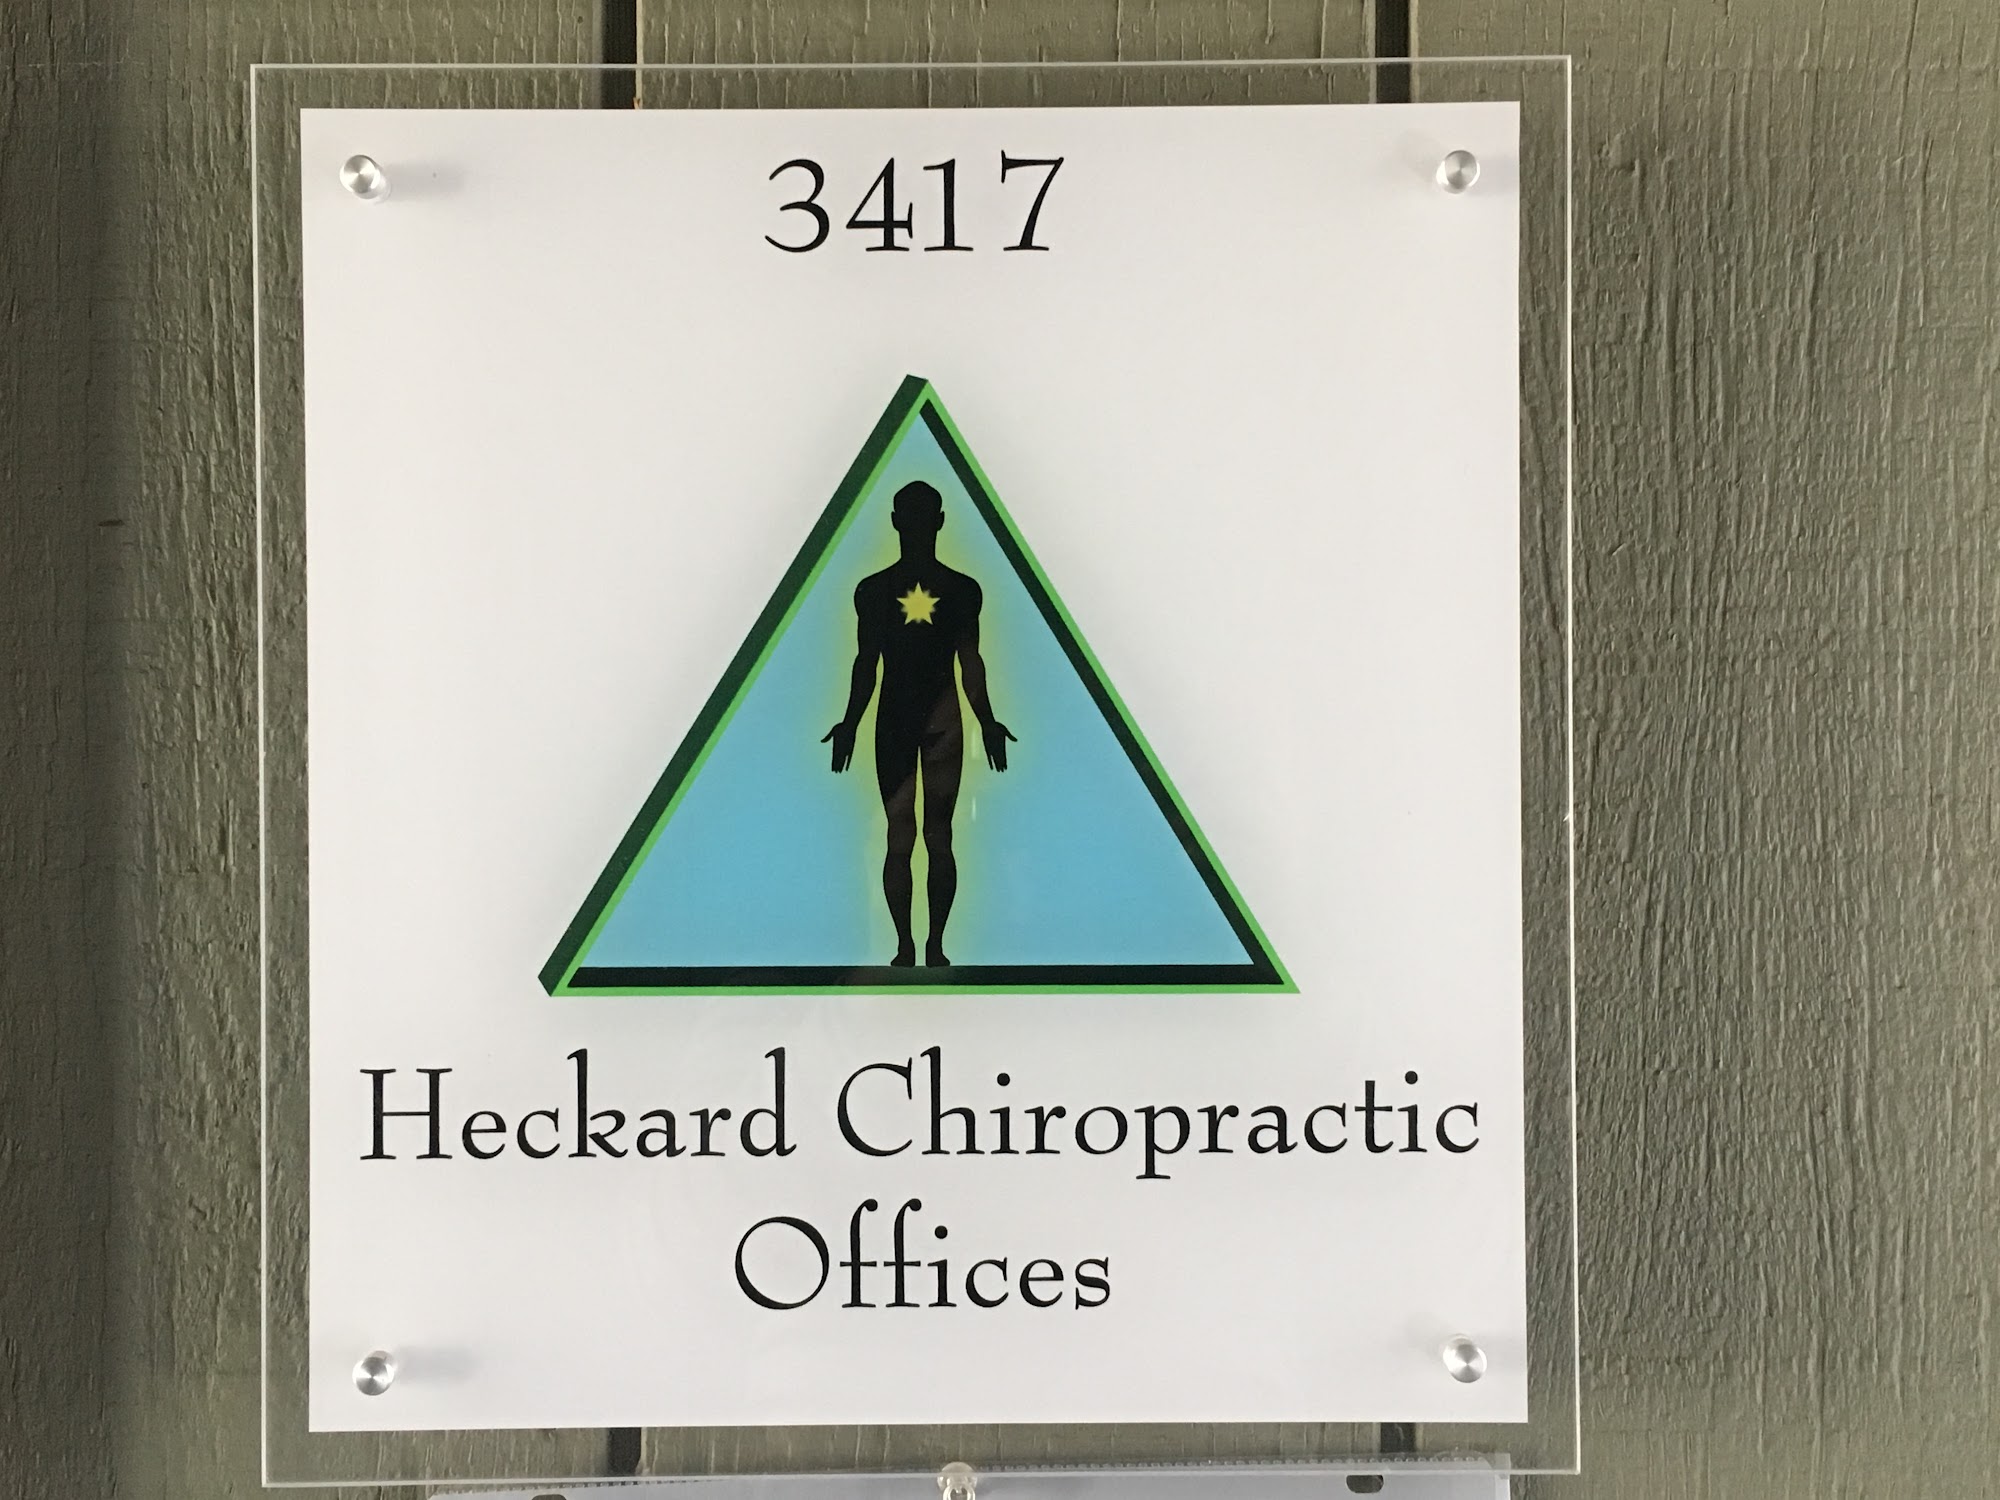 Heckard Chiropractic